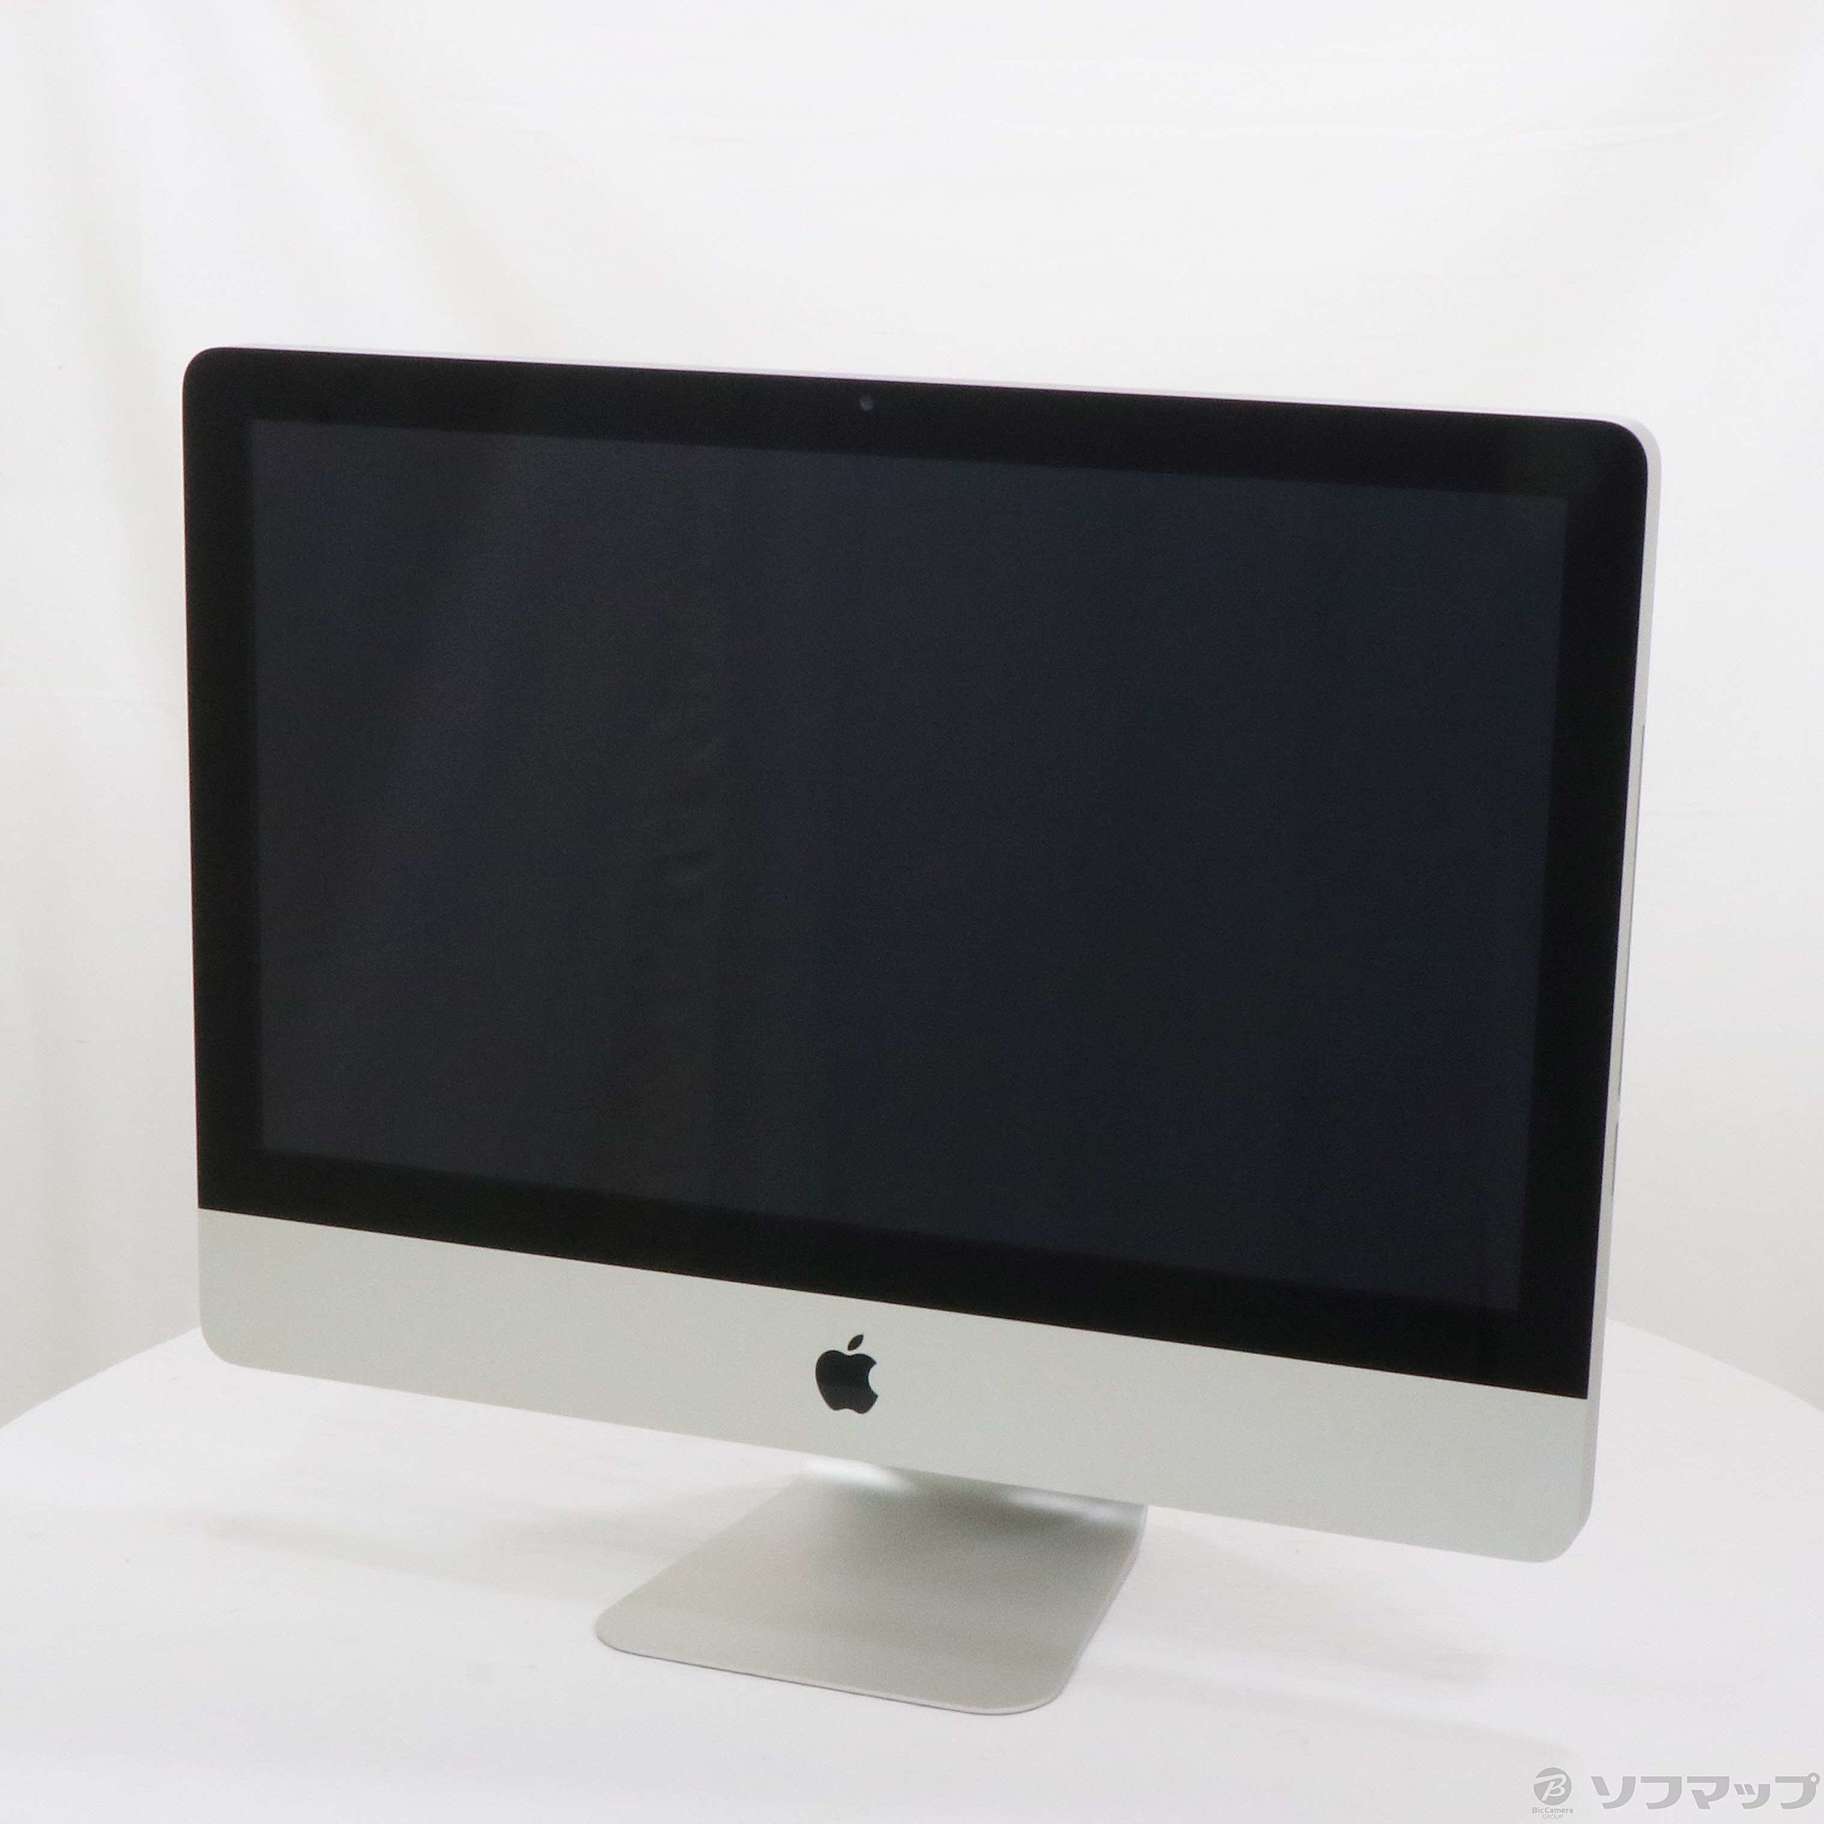 柔らかな質感の AppleアップルiMac MC309J/A 21.5インチ - デスクトップ型PC - www.smithsfalls.ca